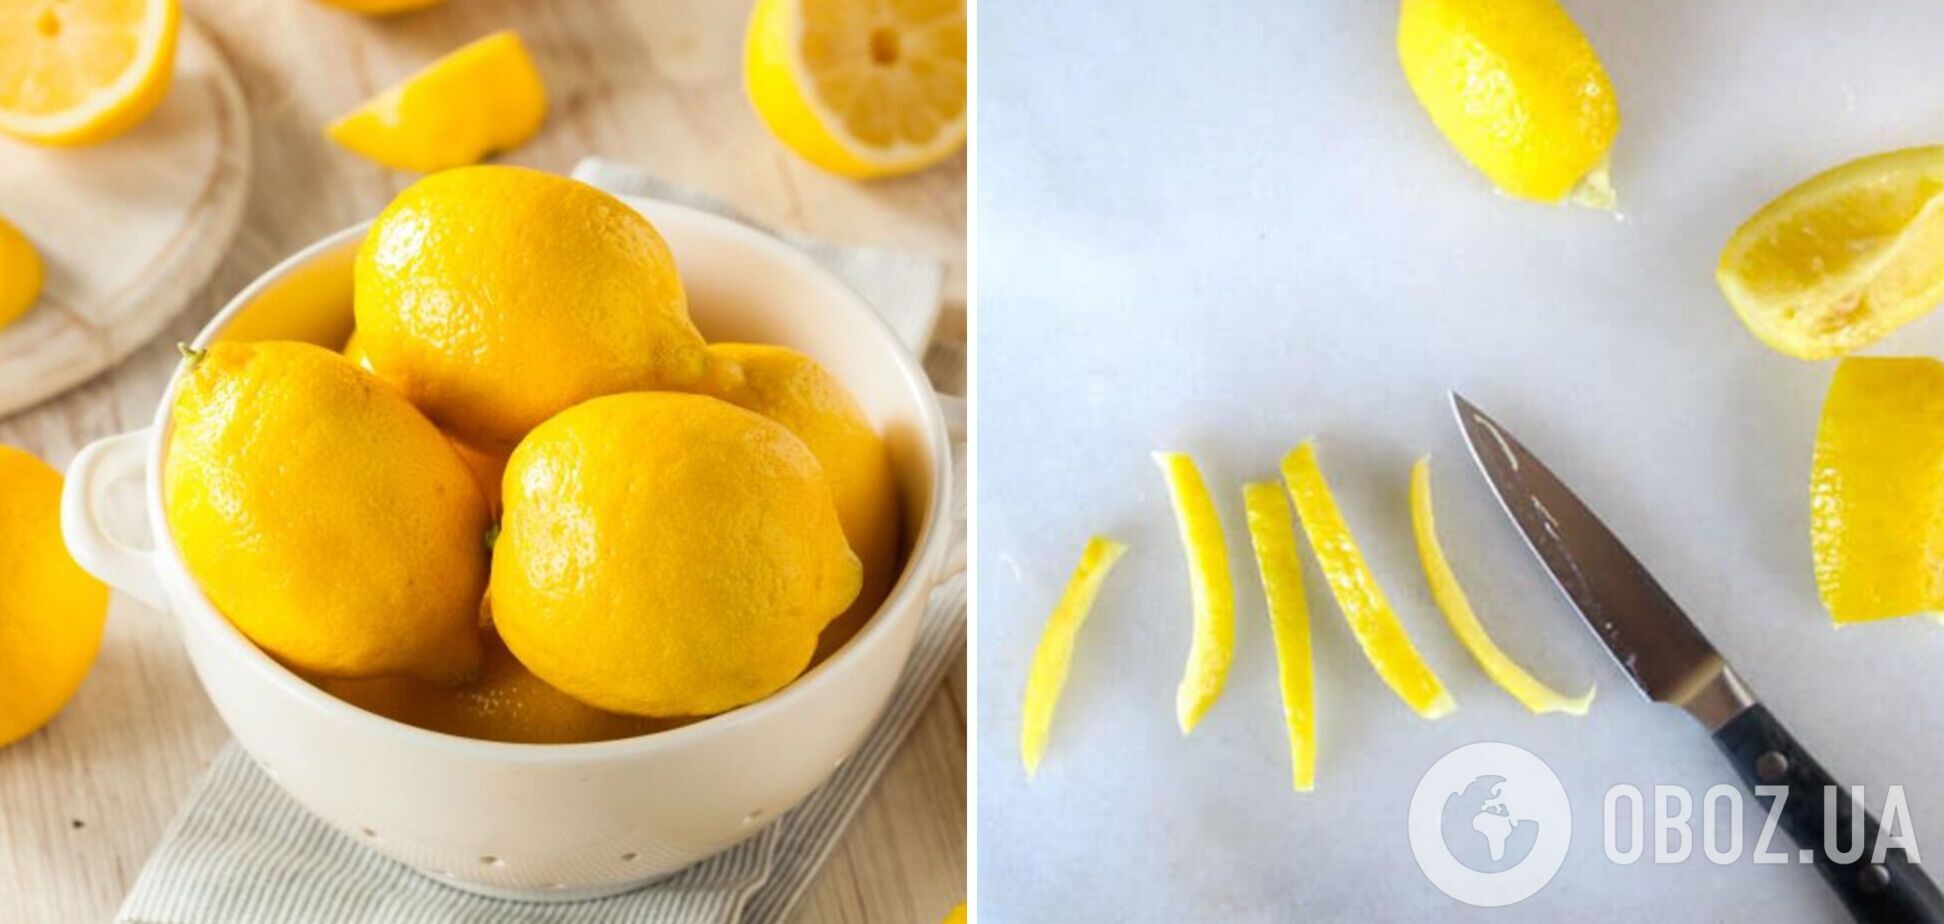 Как можно использовать кожуру лимона: несколько простых способов